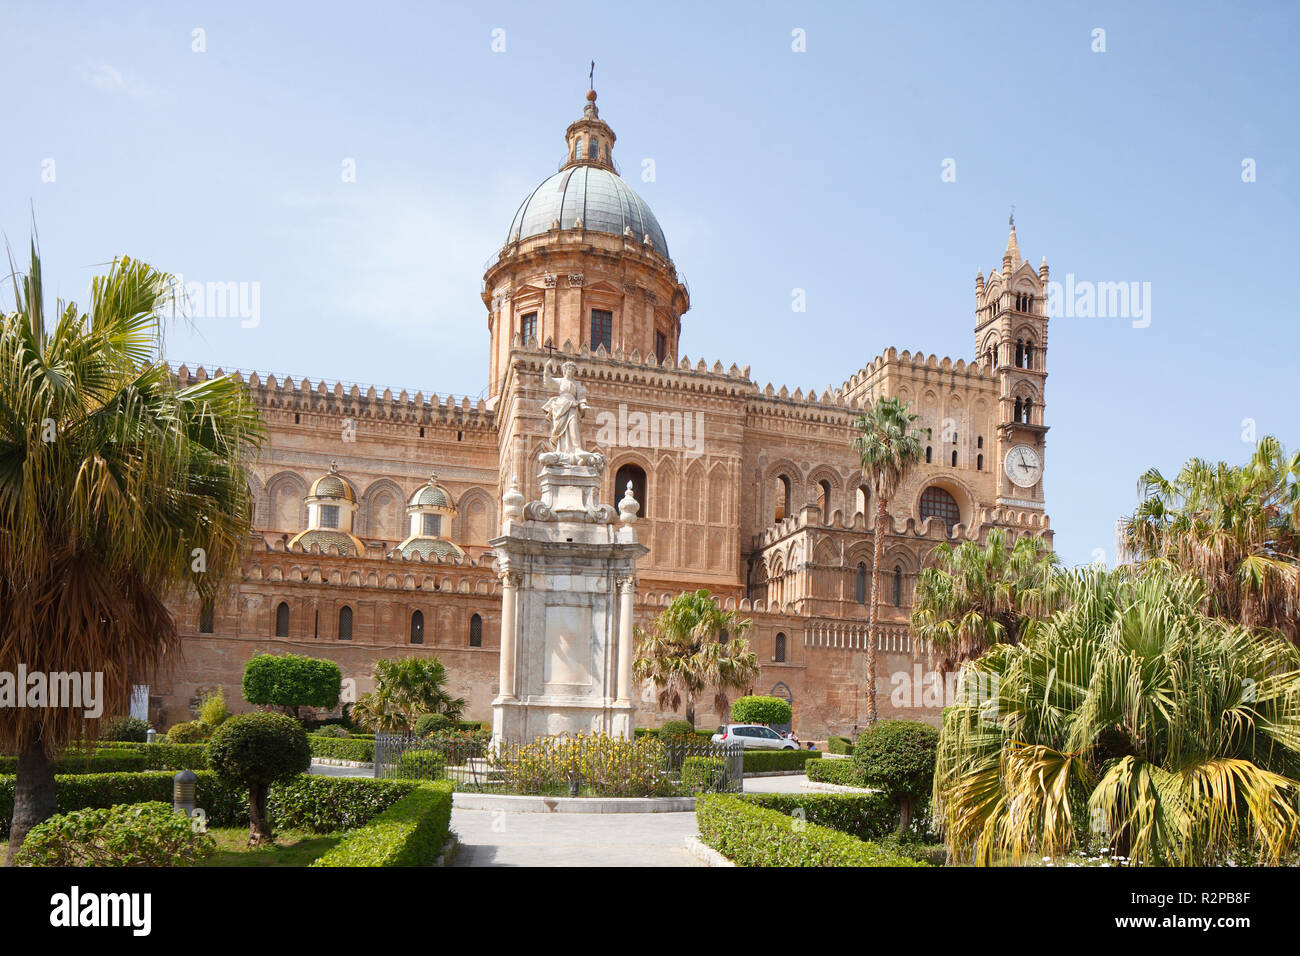 La cathédrale de Palerme, Cattedrale Maria Santissima Assunta, Palermo, Sicily, Italy, Europe Banque D'Images